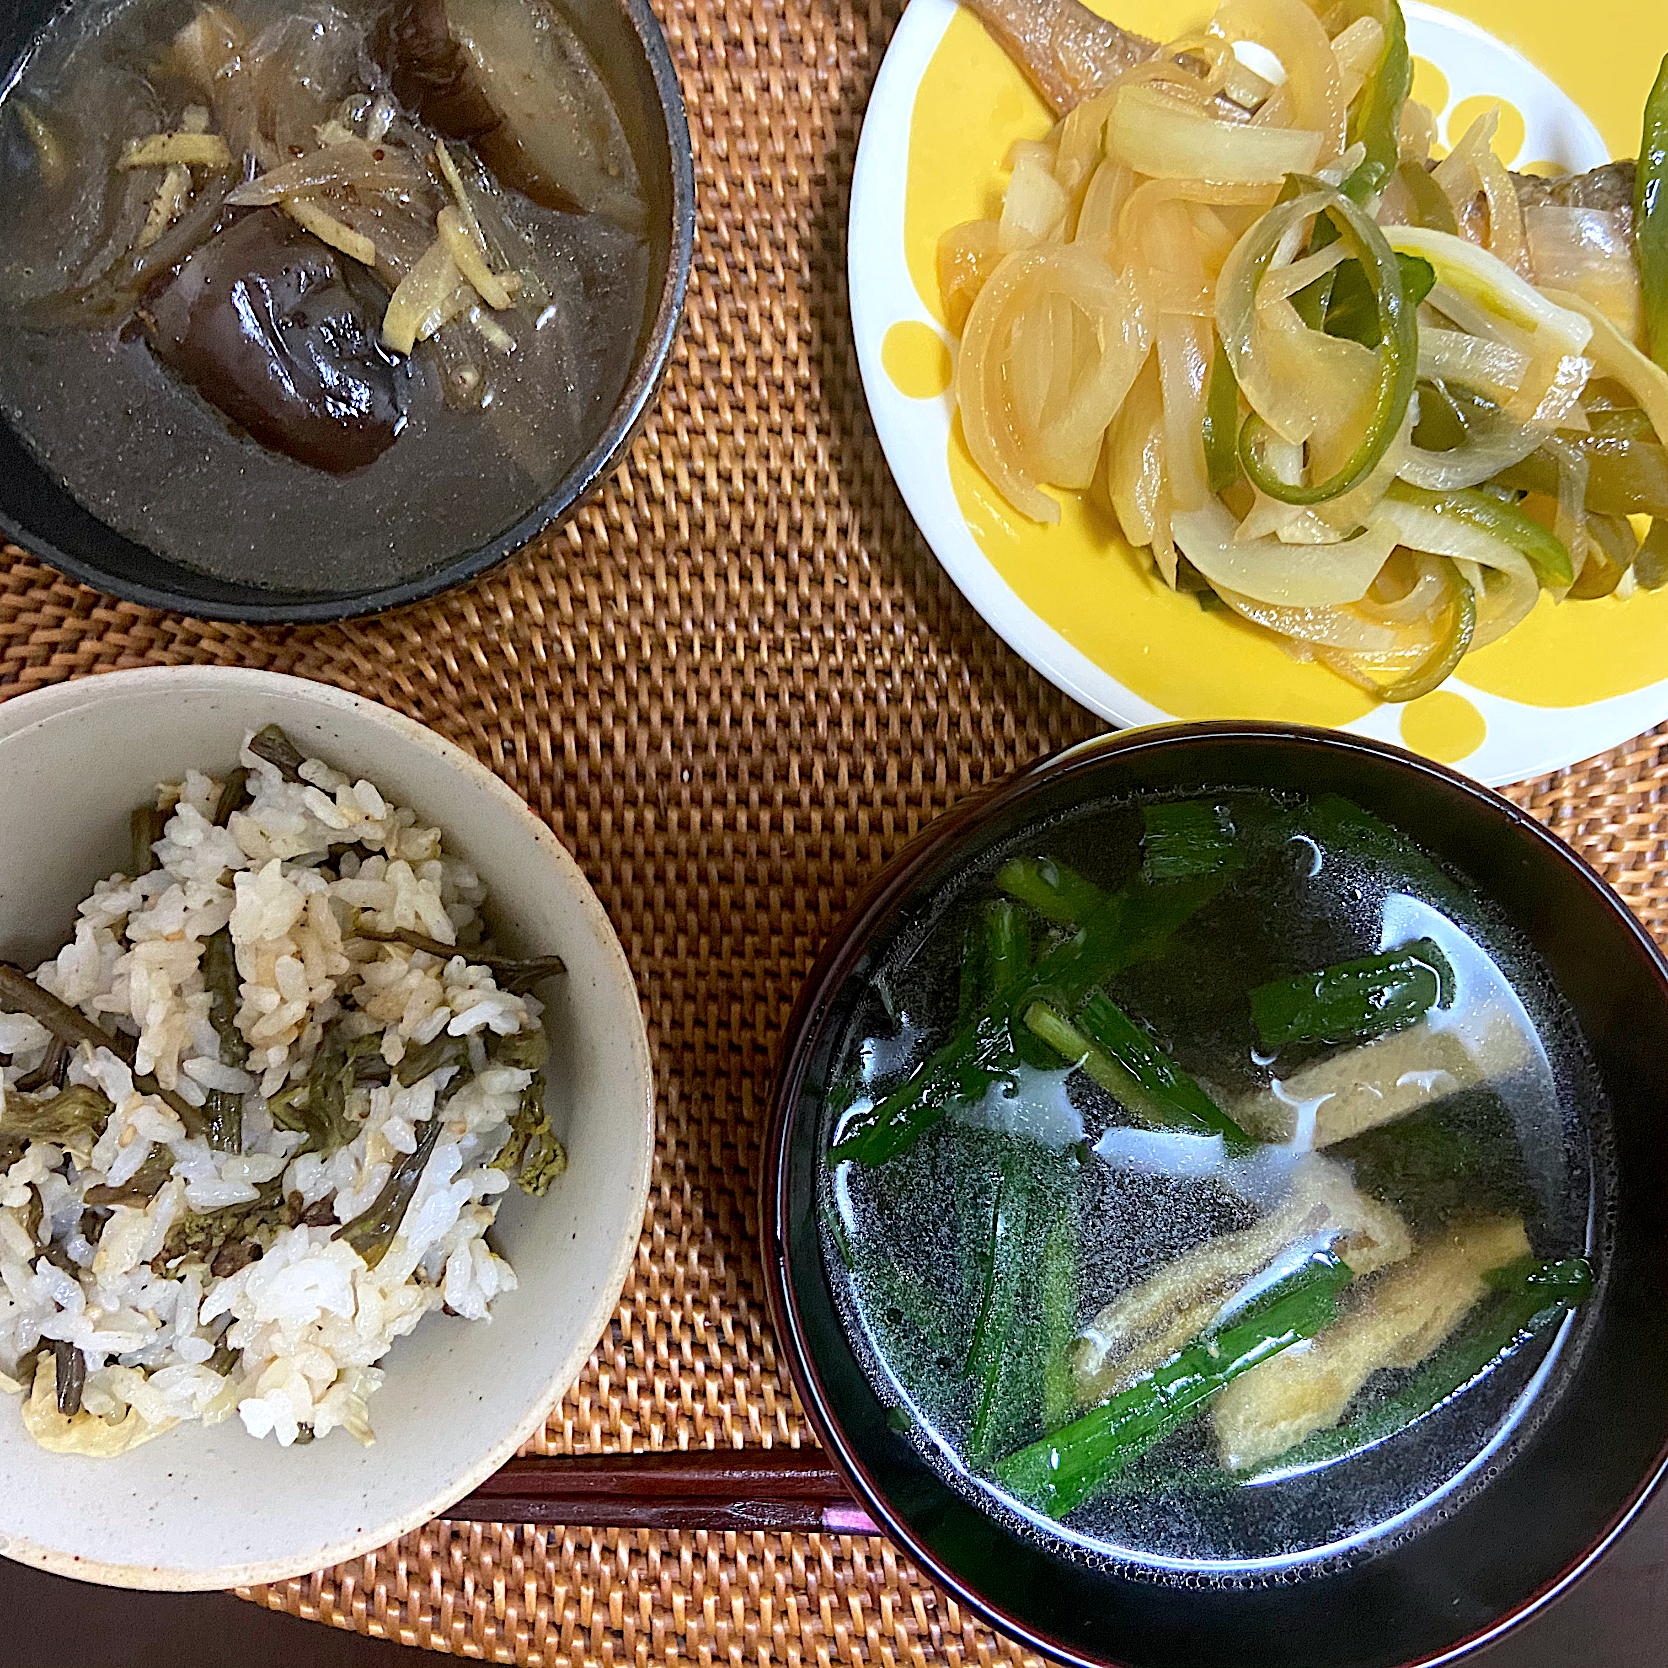 ヘルシー山菜料理 ヘルシー料理グランプリ21 ヤマサ醤油株式会社